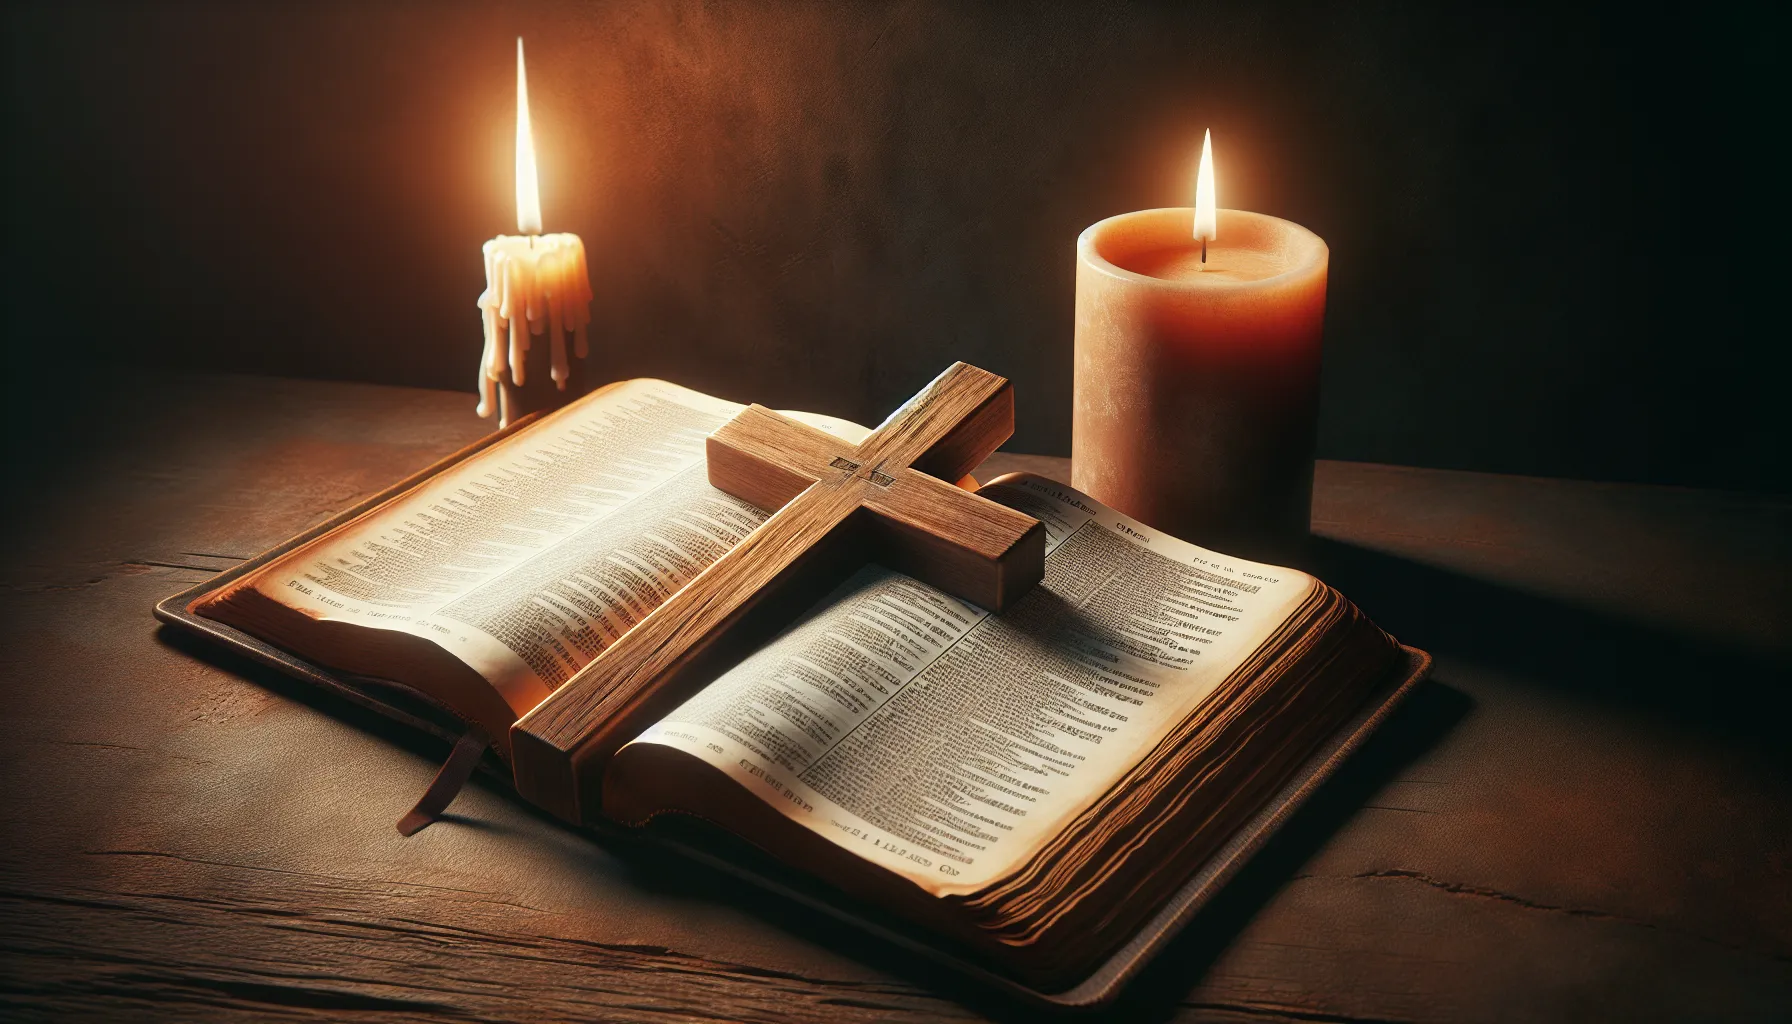 Imagen de una cruz cristiana con una Biblia abierta y una vela encendida